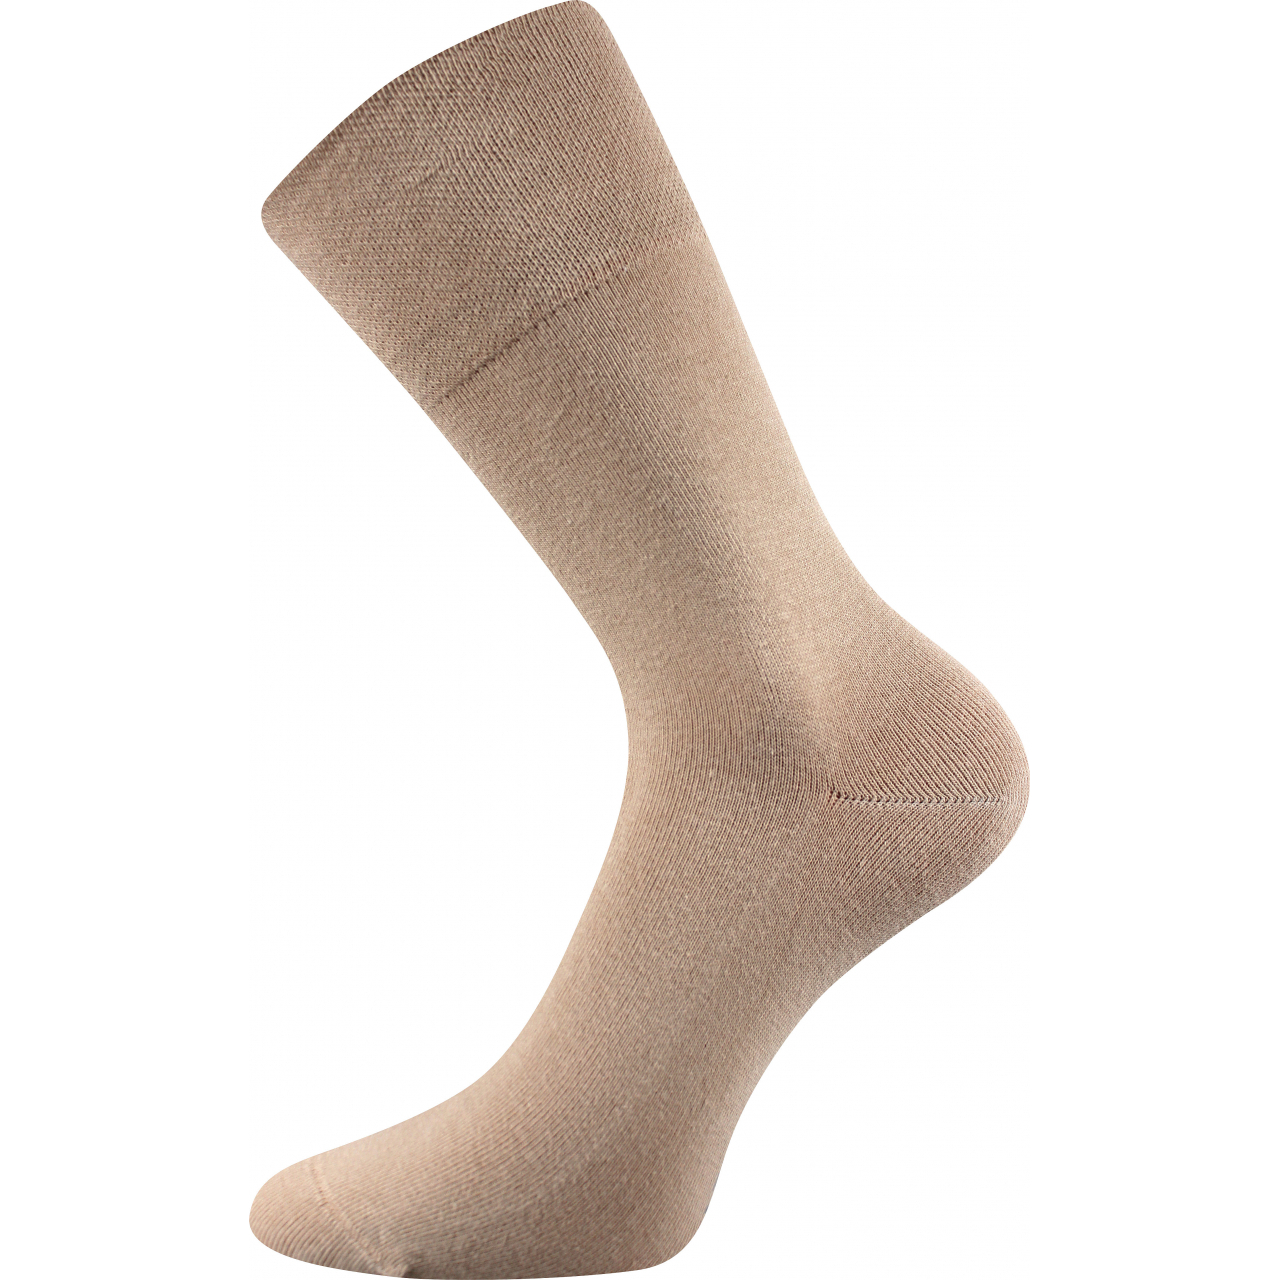 Ponožky klasické unisex Lonka Diagram - béžové, 43-46